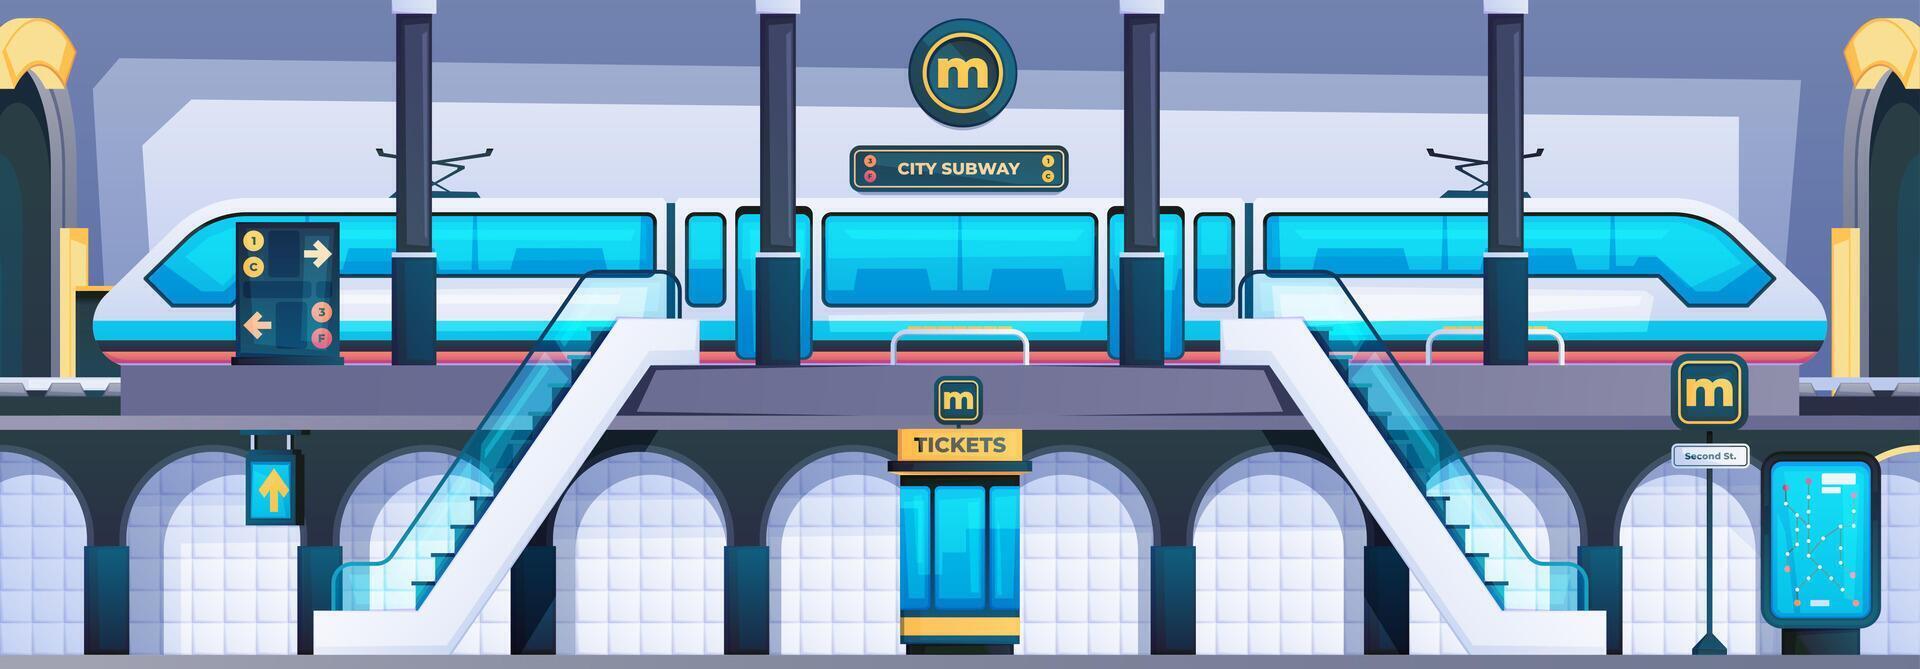 tunnelbana station scen. stad metro offentlig passagerare terminal, järnväg underjordisk byggnad med plattform för avresa och ankomst av tåg. vektor illustration